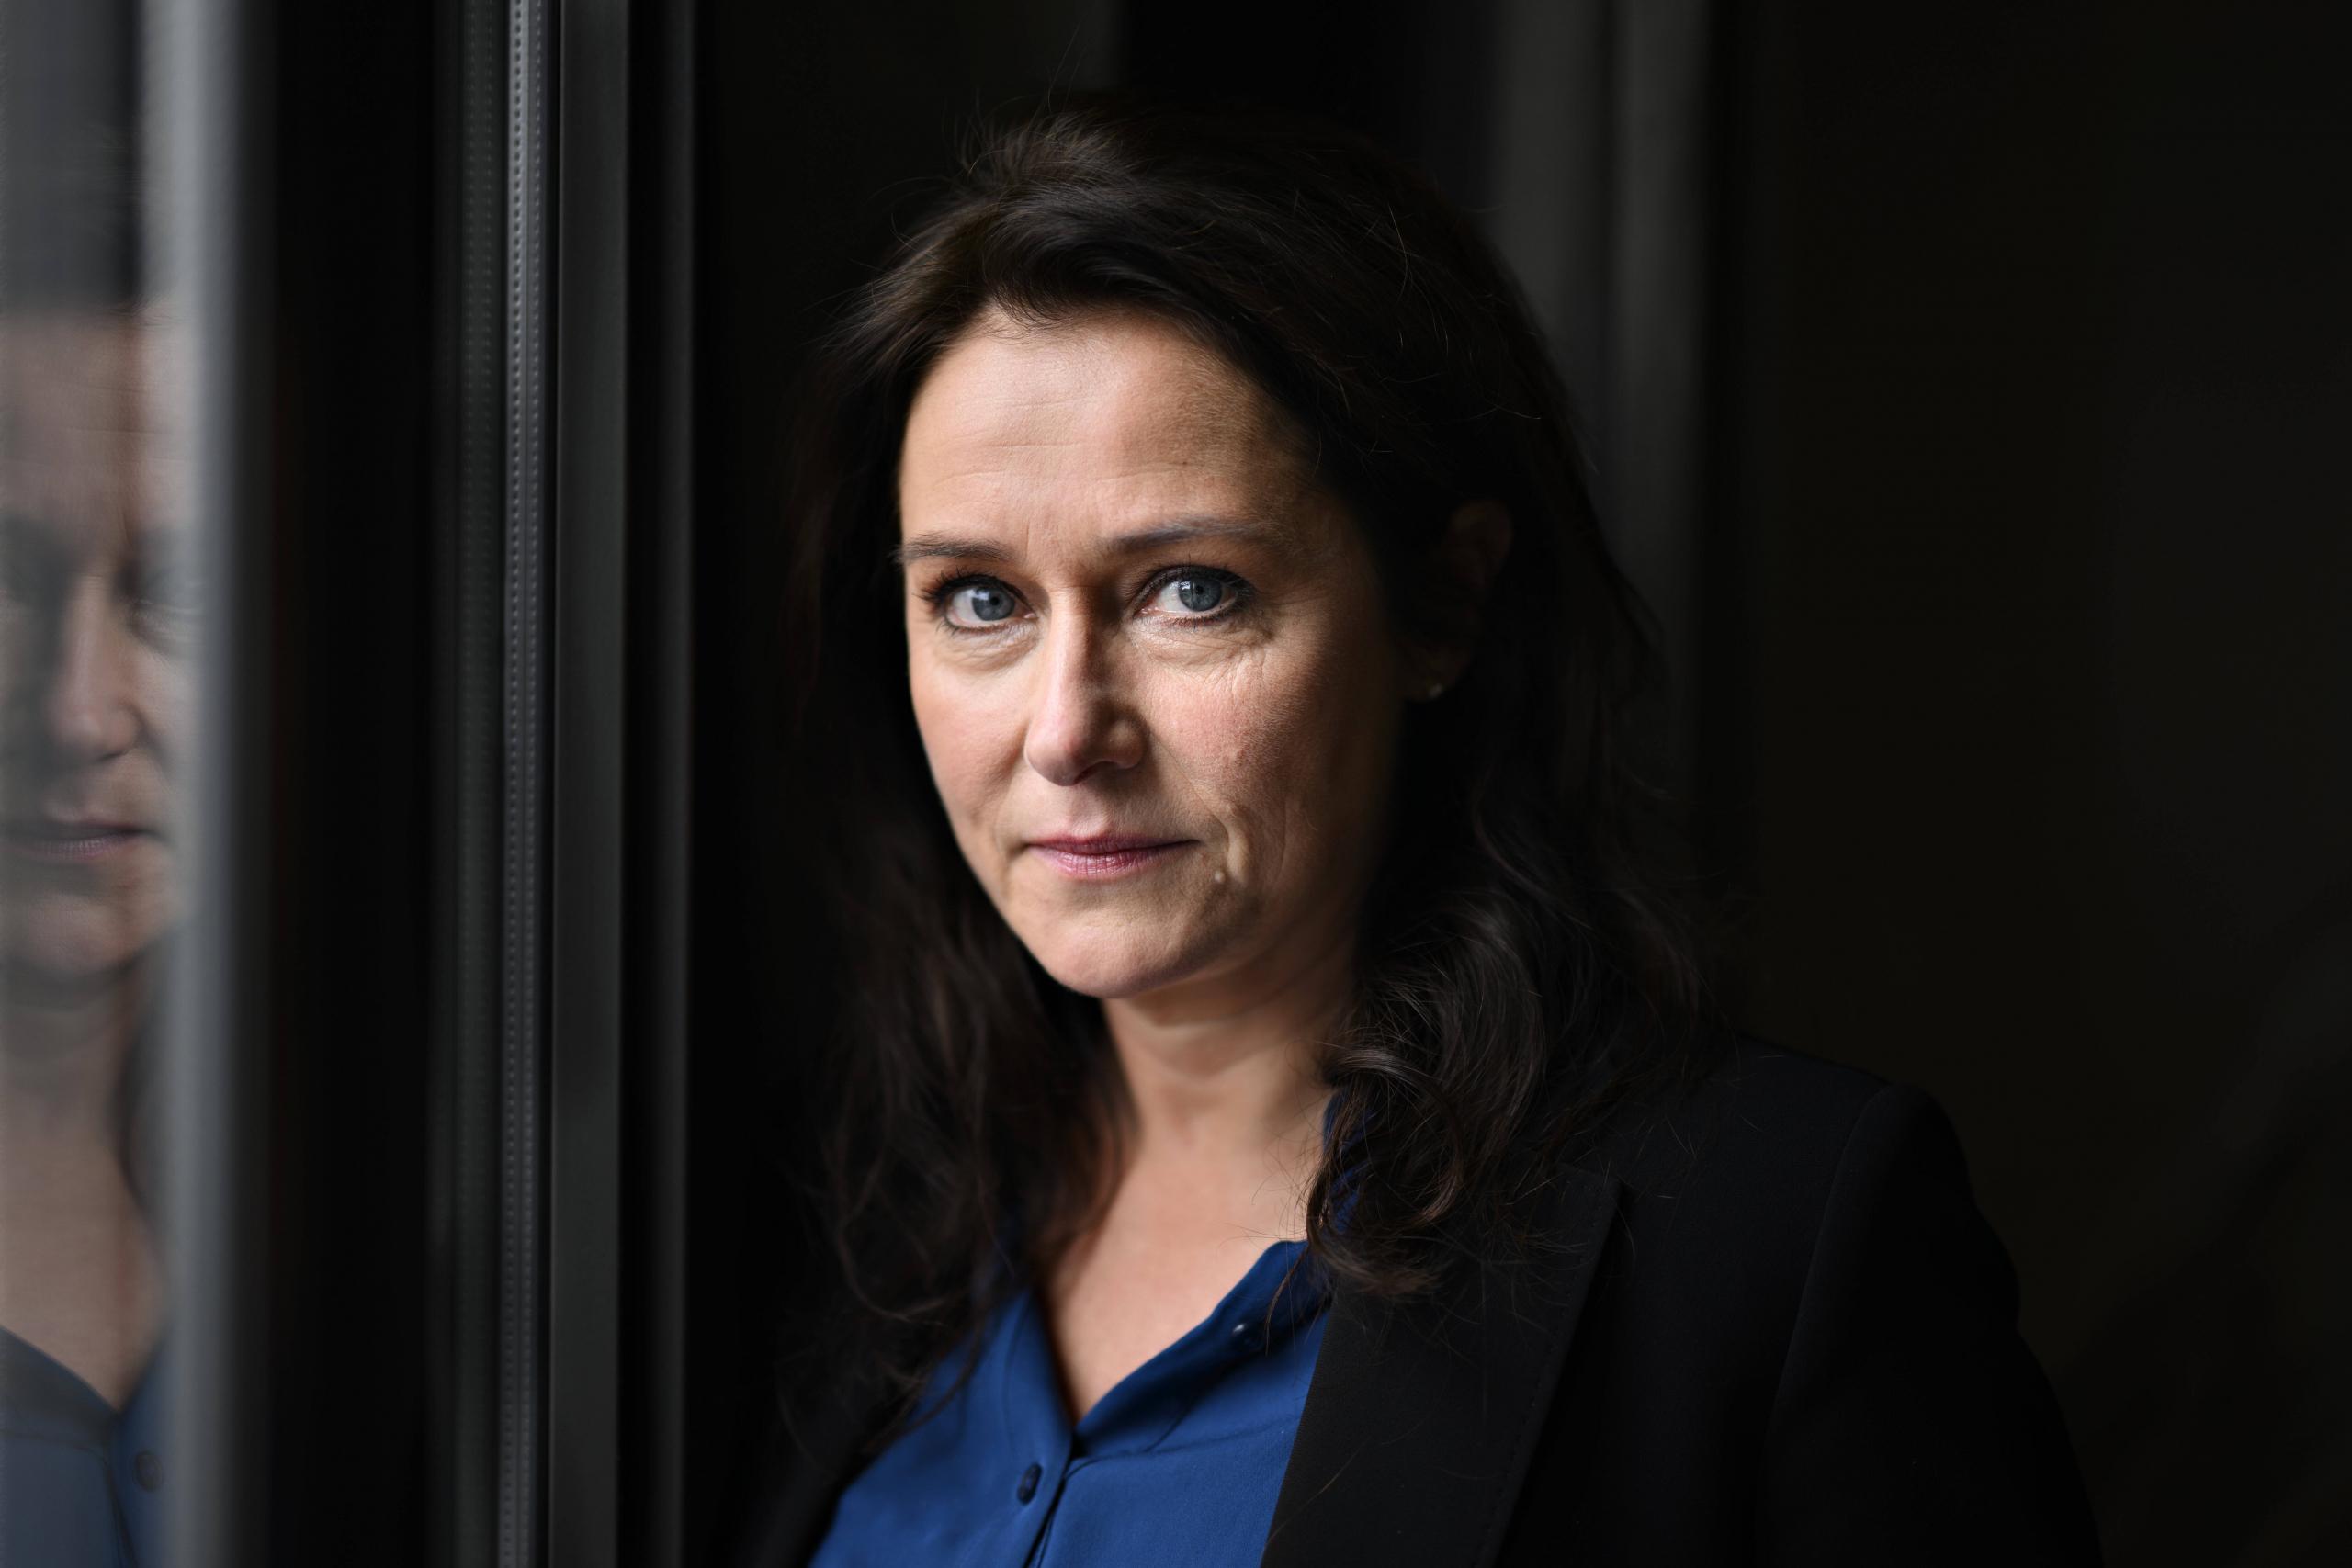 Sidse Babett Knudsen mimt die linksliberale Politikerin Birgitte Nyborg auch in der vierten Staffel brillant.